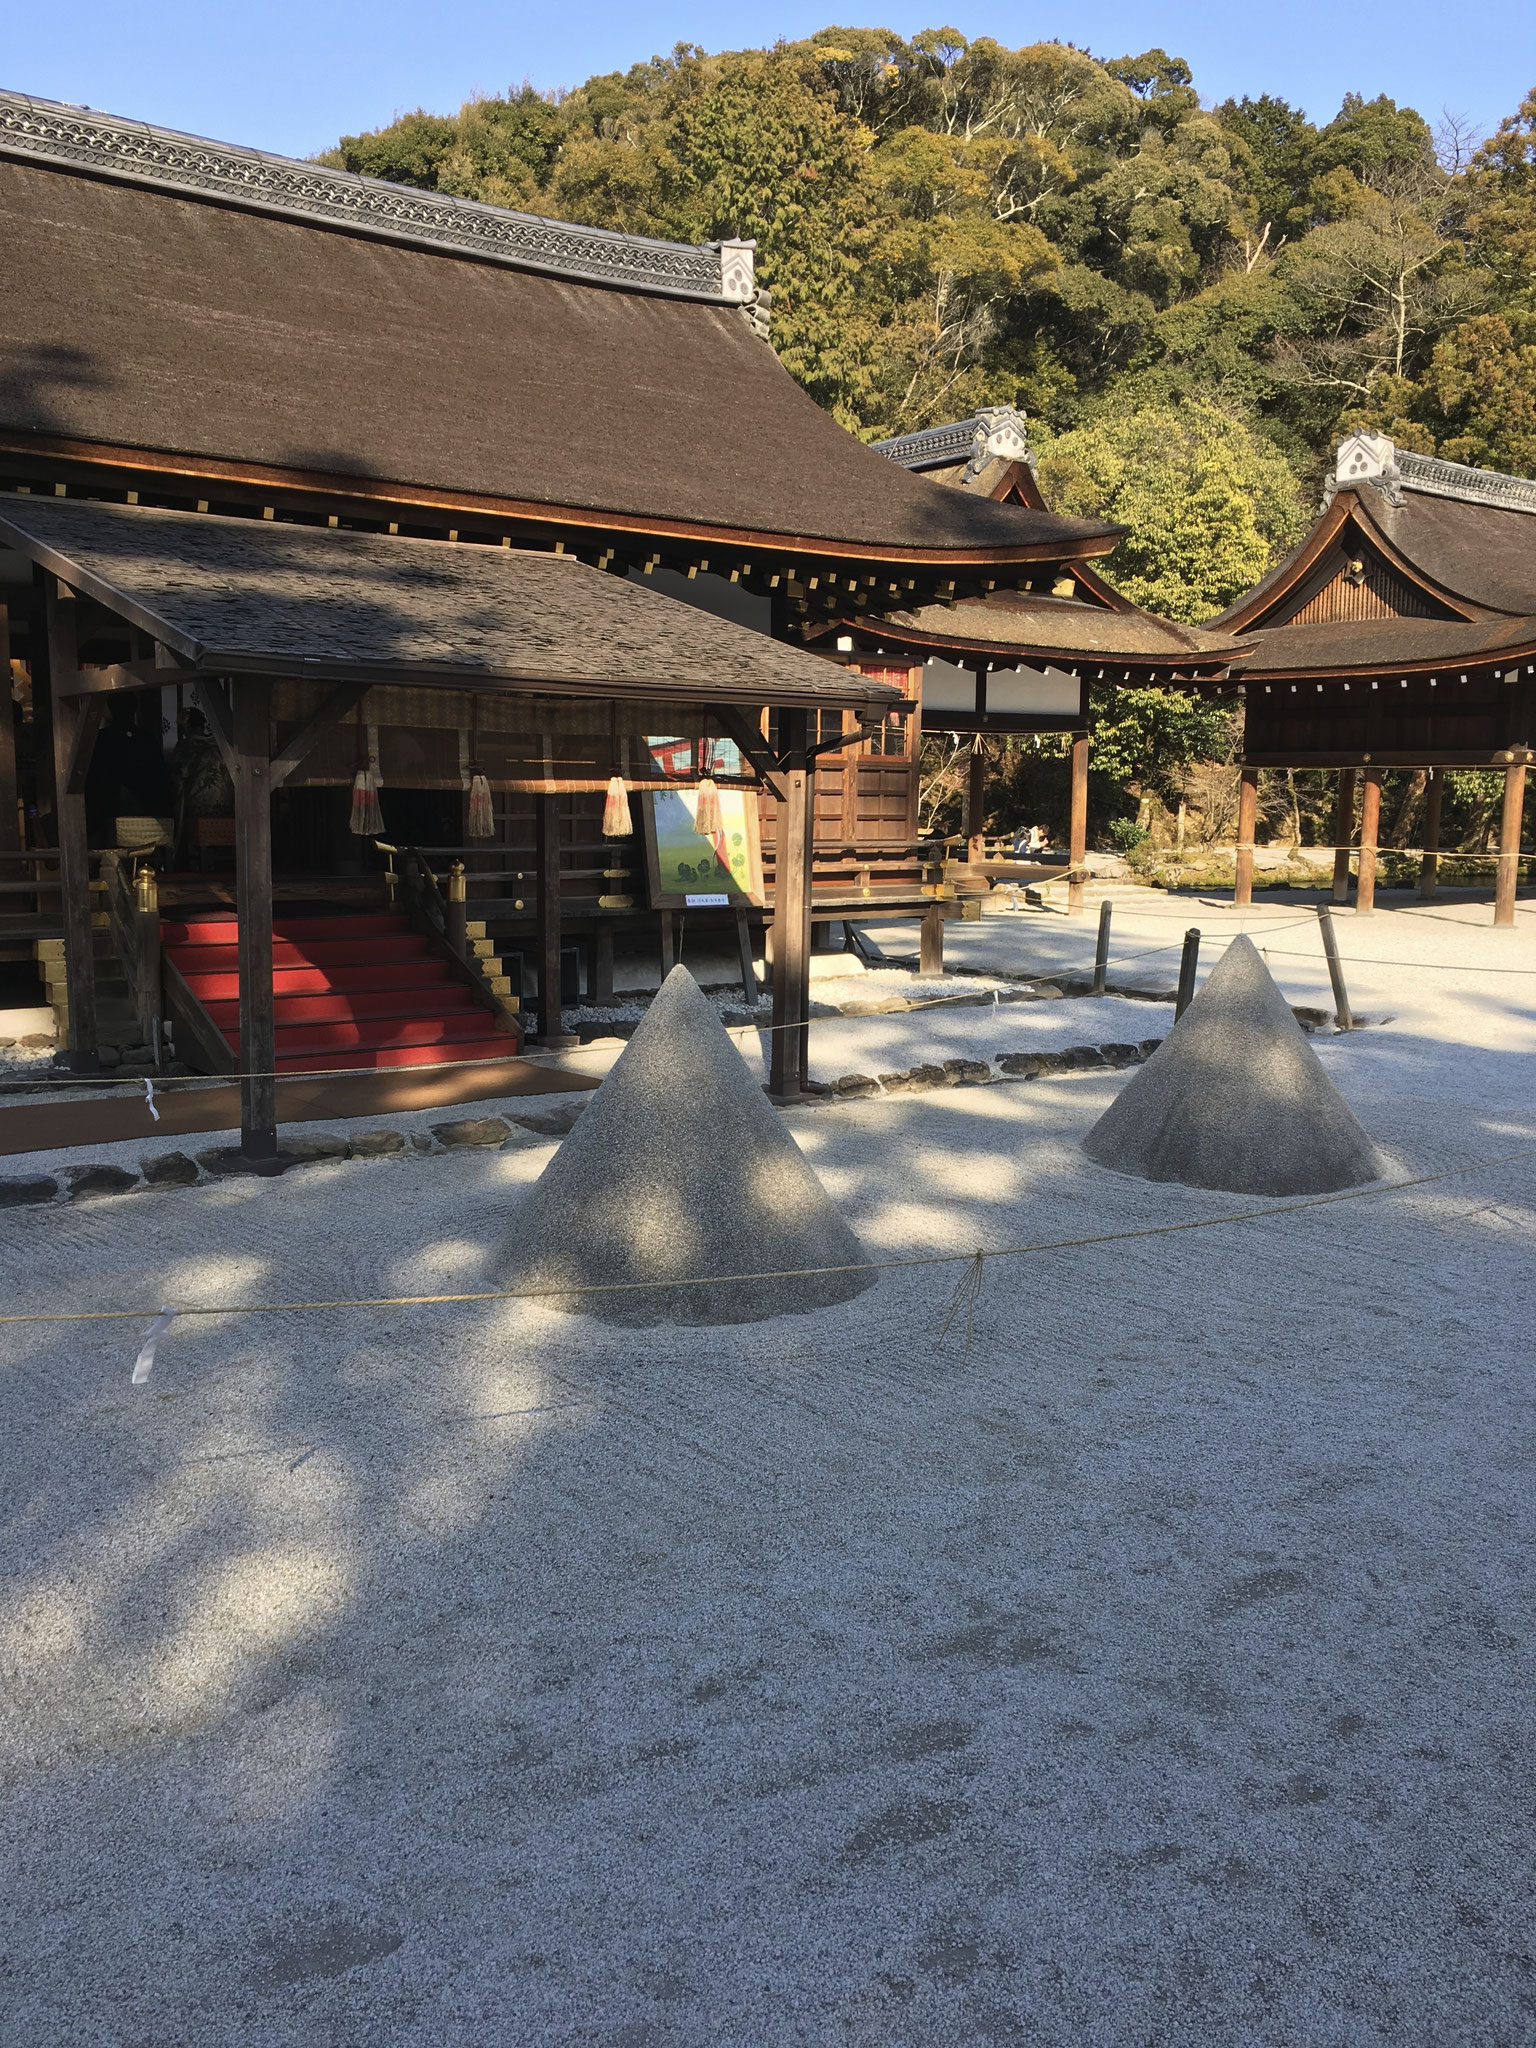 上賀茂神社にある 神が降臨した神山を模した「立砂」はパワースポット。